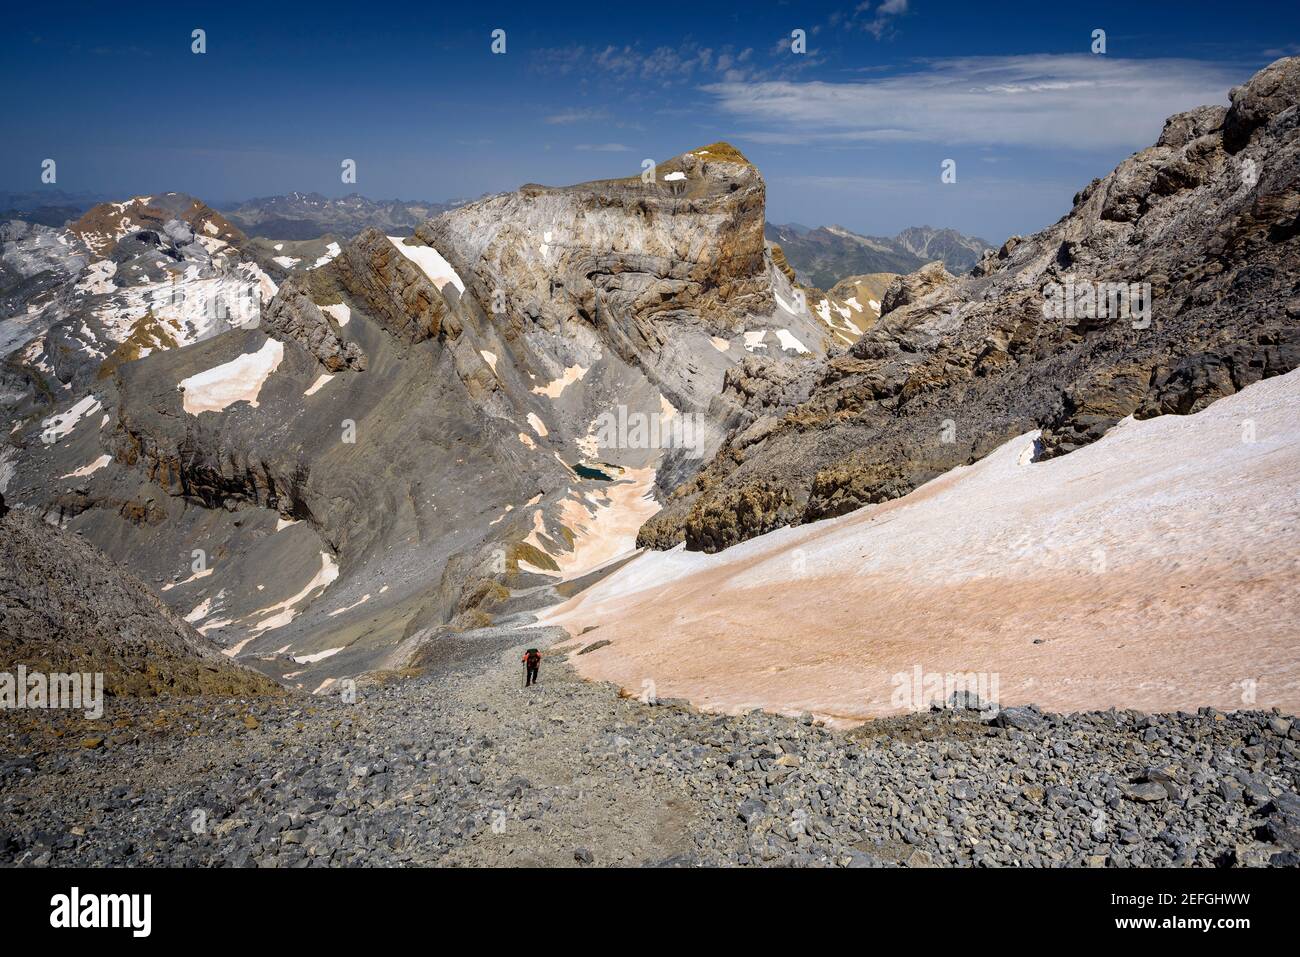 Der Gipfel des Cilindro de Marboré von der Route zum Gipfel des Monte Perdido aus gesehen (Nationalpark Ordesa y Monte Perdido, Pyrenäen, Spanien) Stockfoto